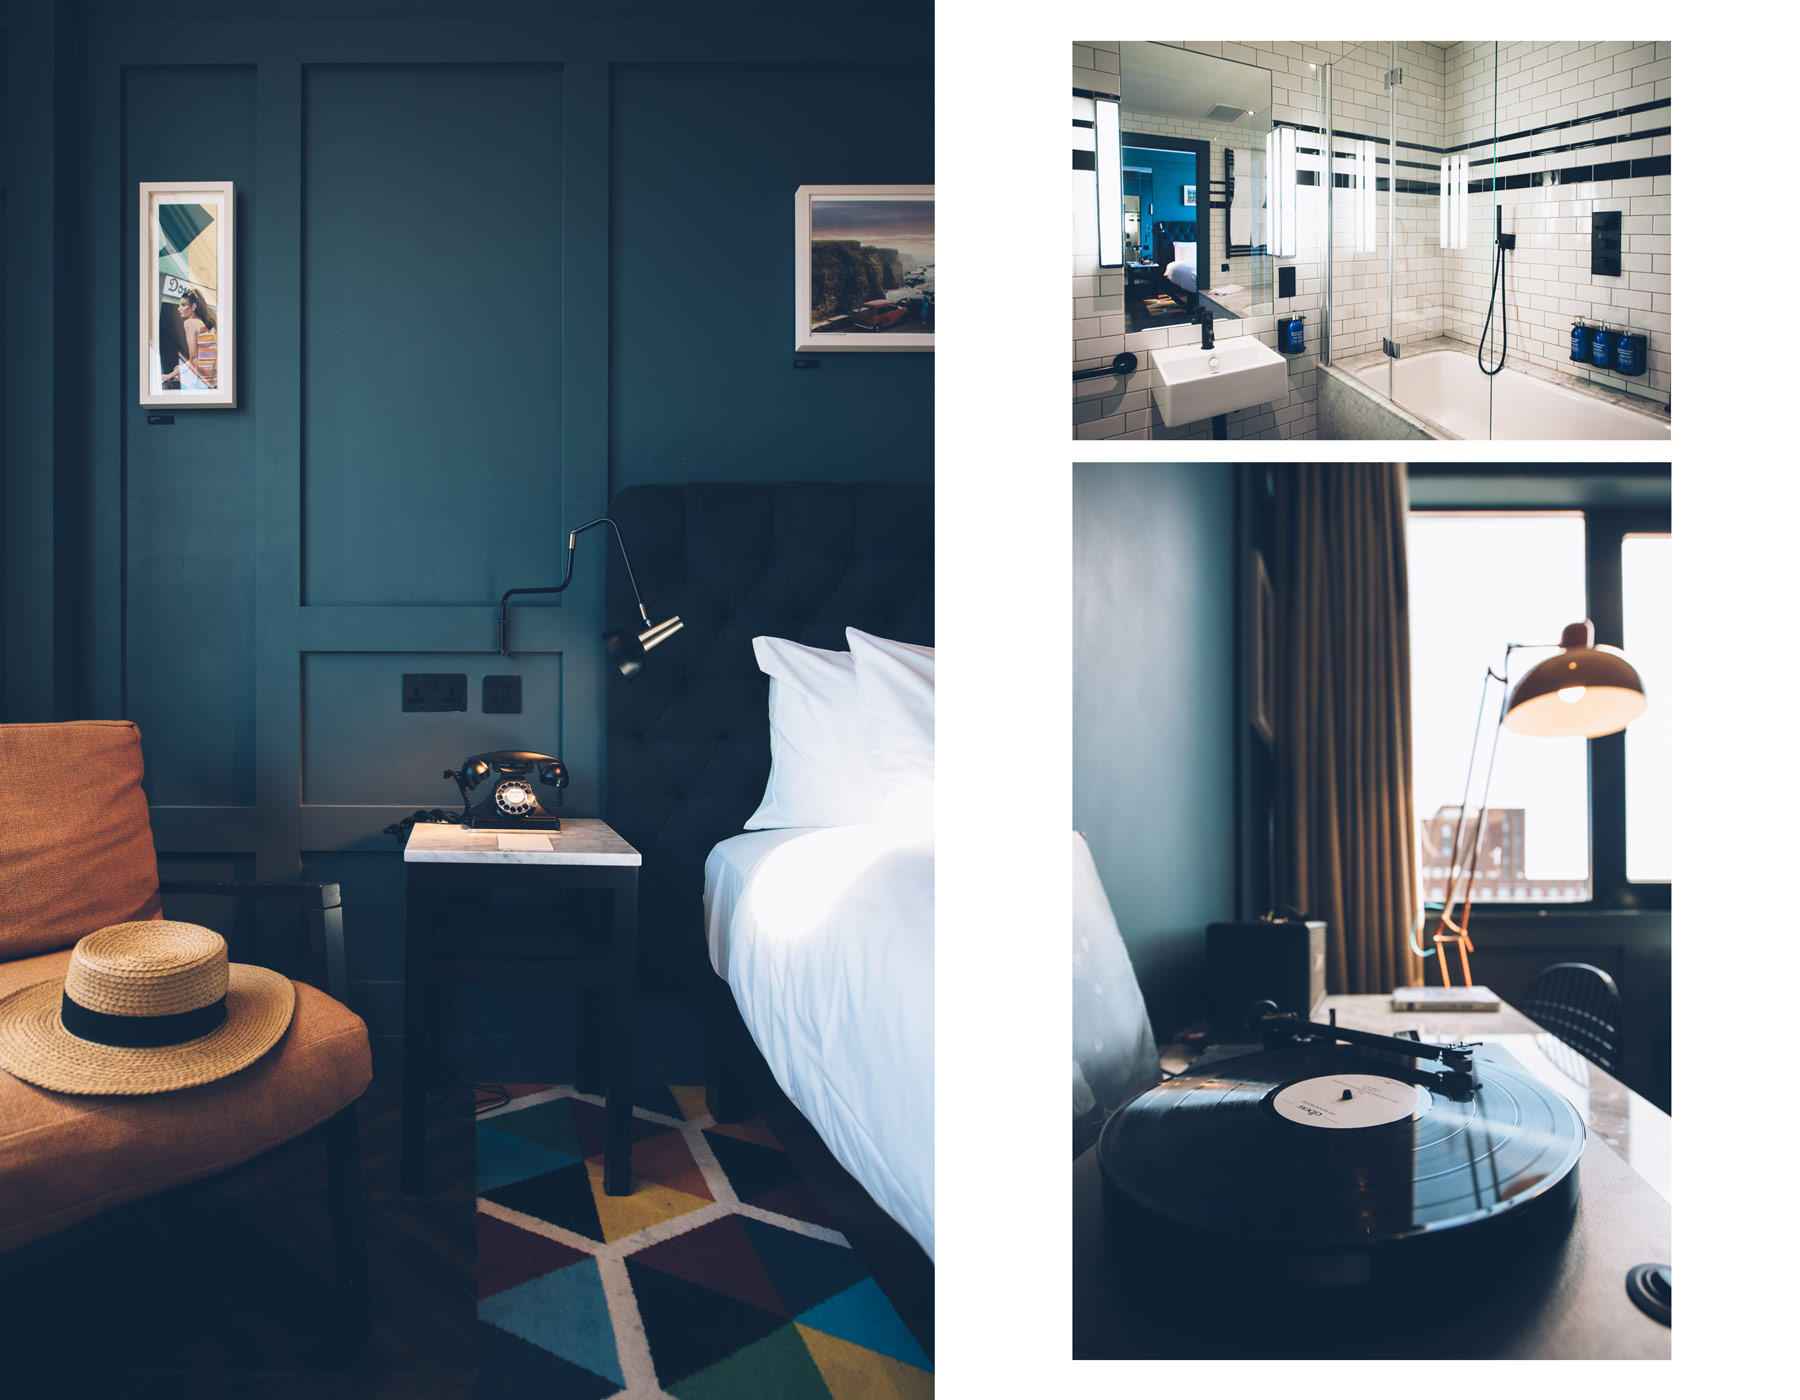 Hotel Design Dublin: The Dean